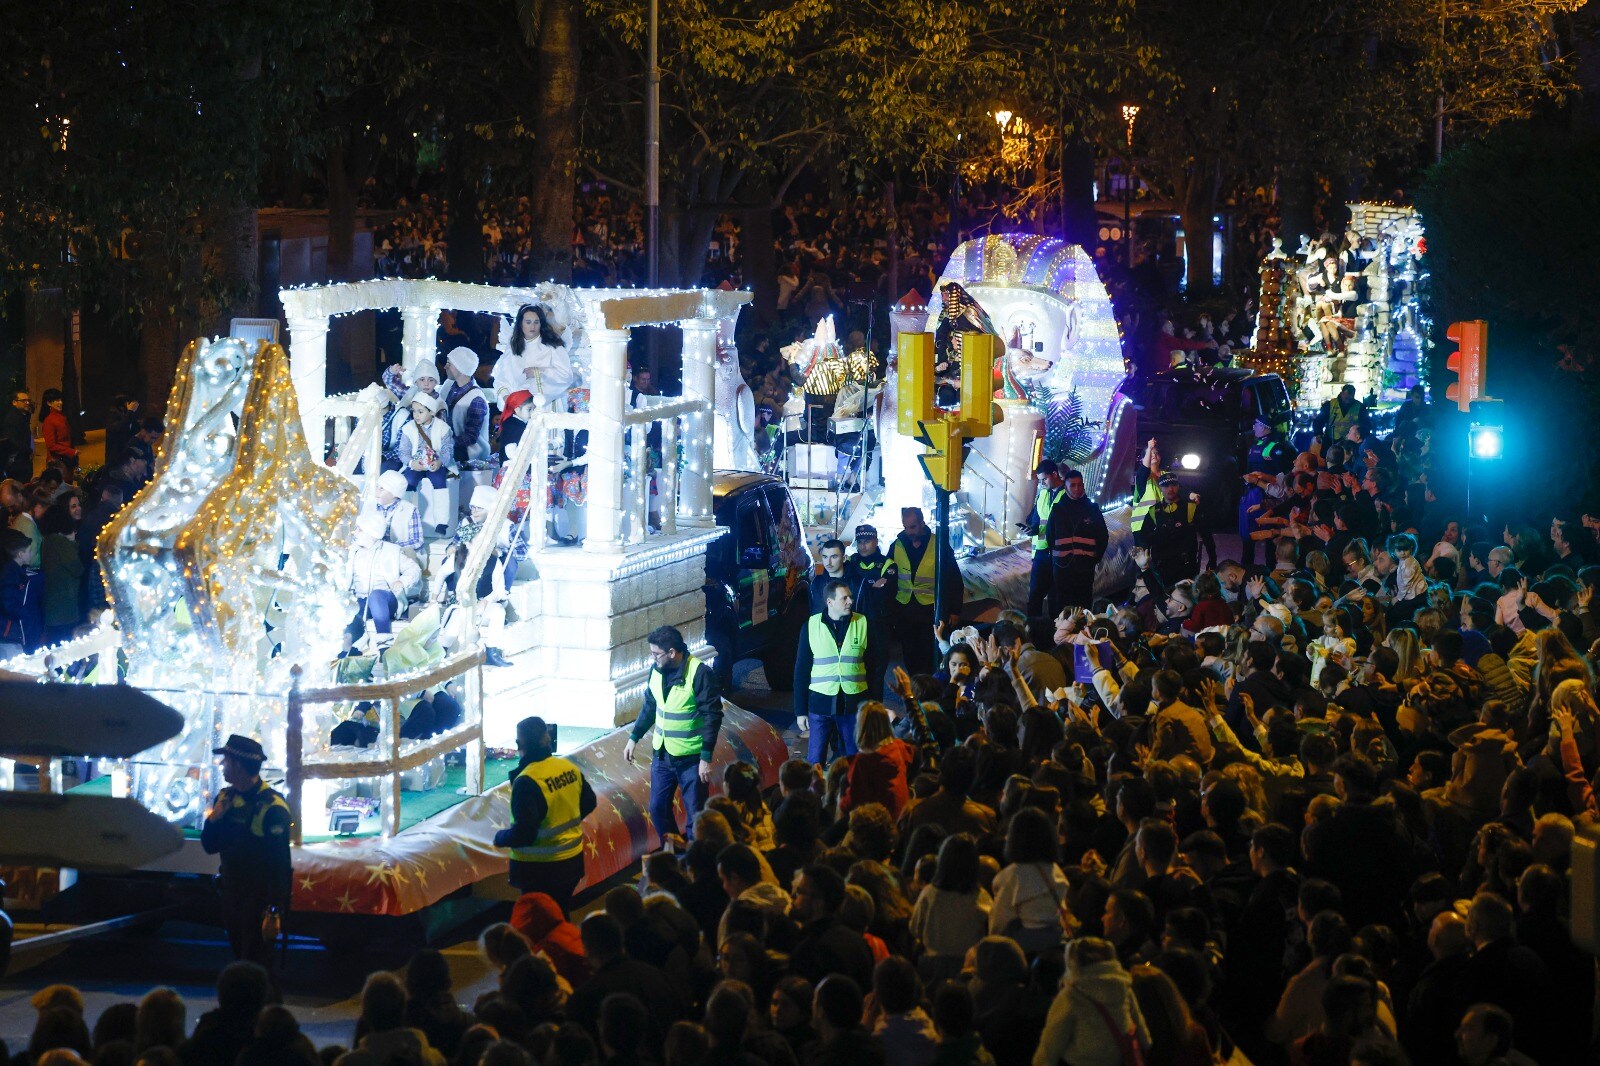 The Three Kings parade in Malaga city.